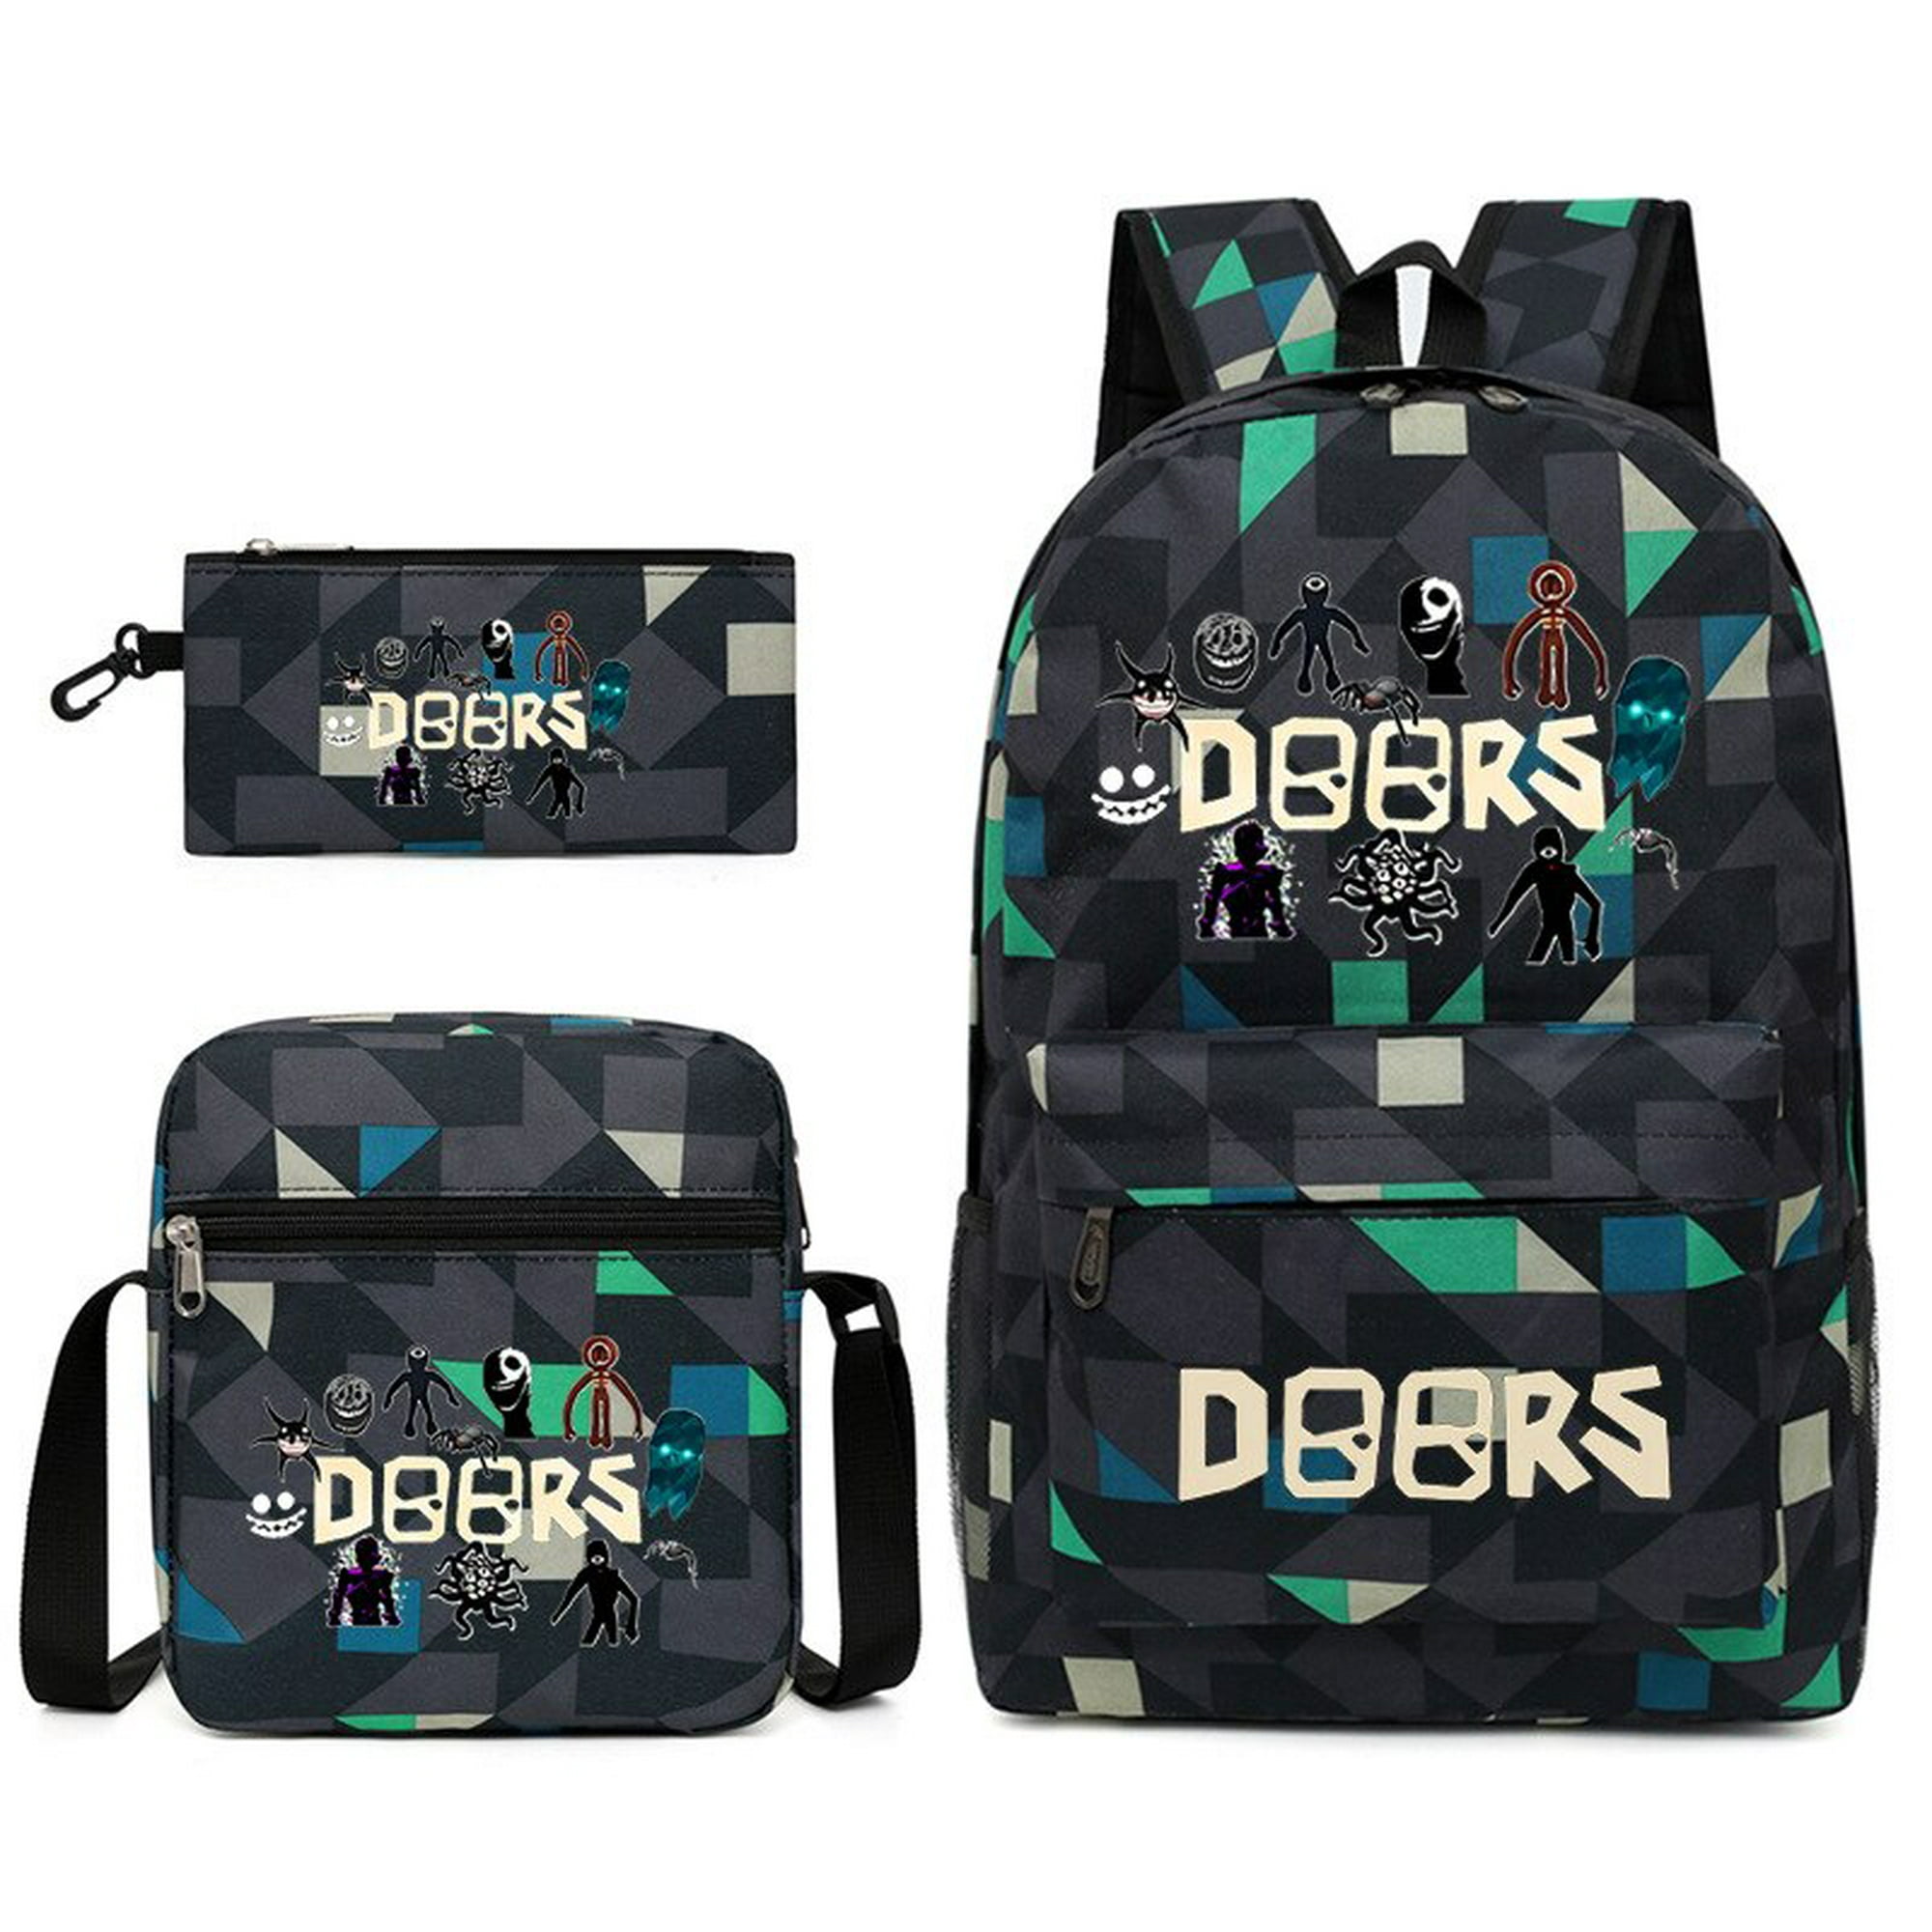 Doors roblox mochila escolar de tres piezas estampada, transpirable, práctica, bolsa de lona de gran capacidad, aligeramiento de hombros con cremallera